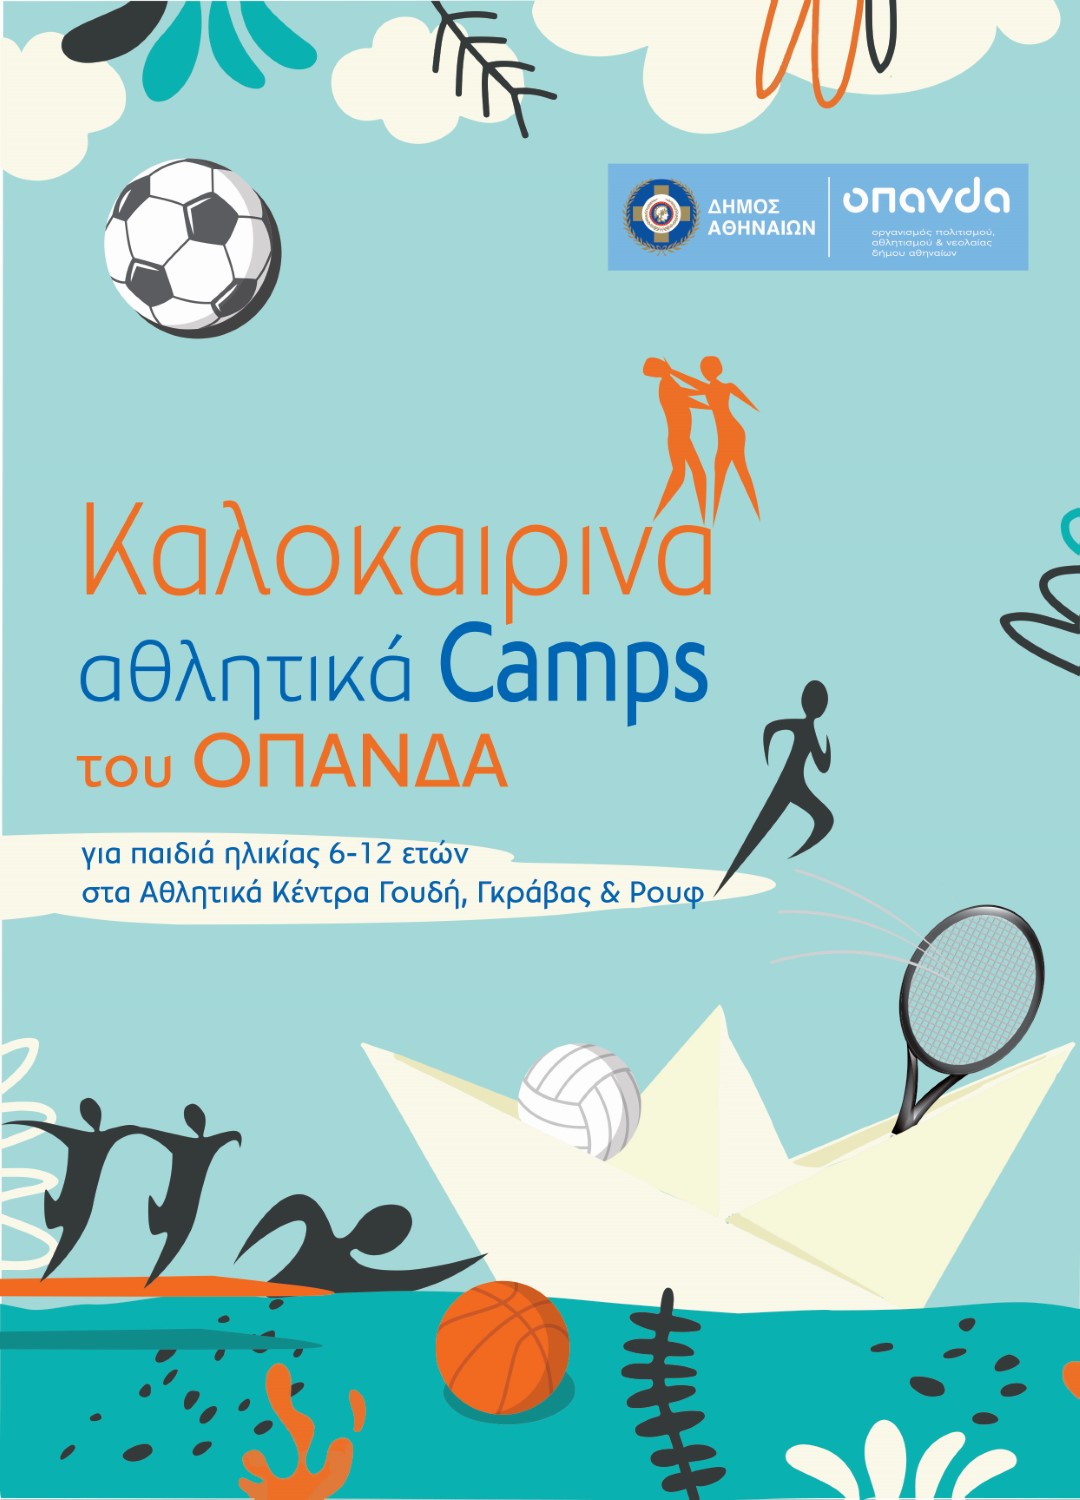 Summer Camps Δήμου Αθηναίων © ΟΠΑΝΔΑ